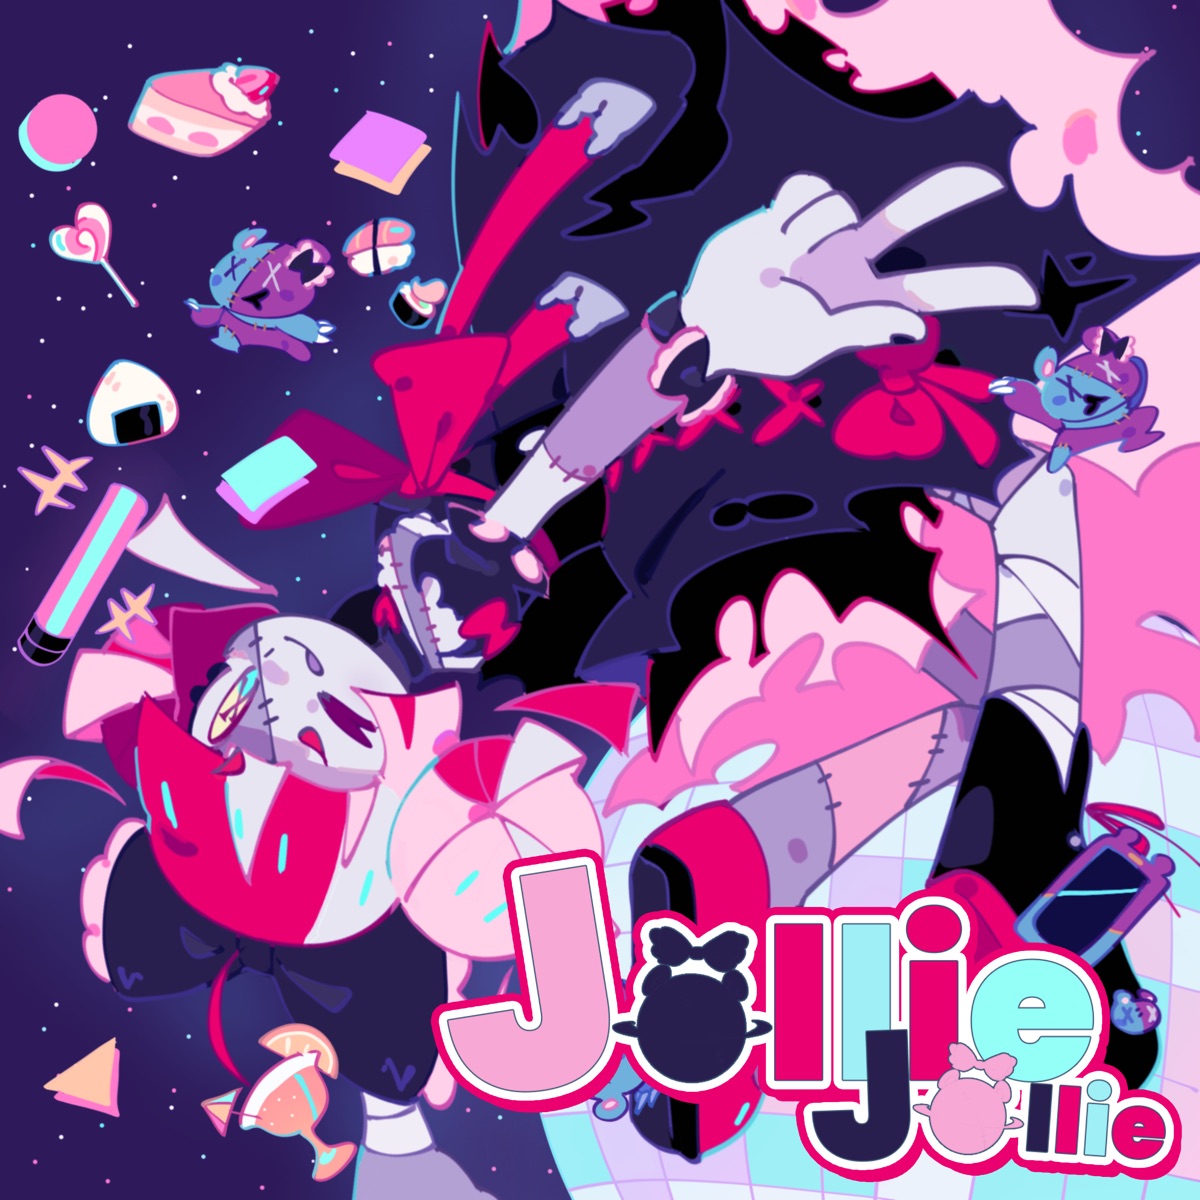 Cover art for『Kureiji Ollie - JOLLIE JOLLIE』from the release『JOLLIE JOLLIE